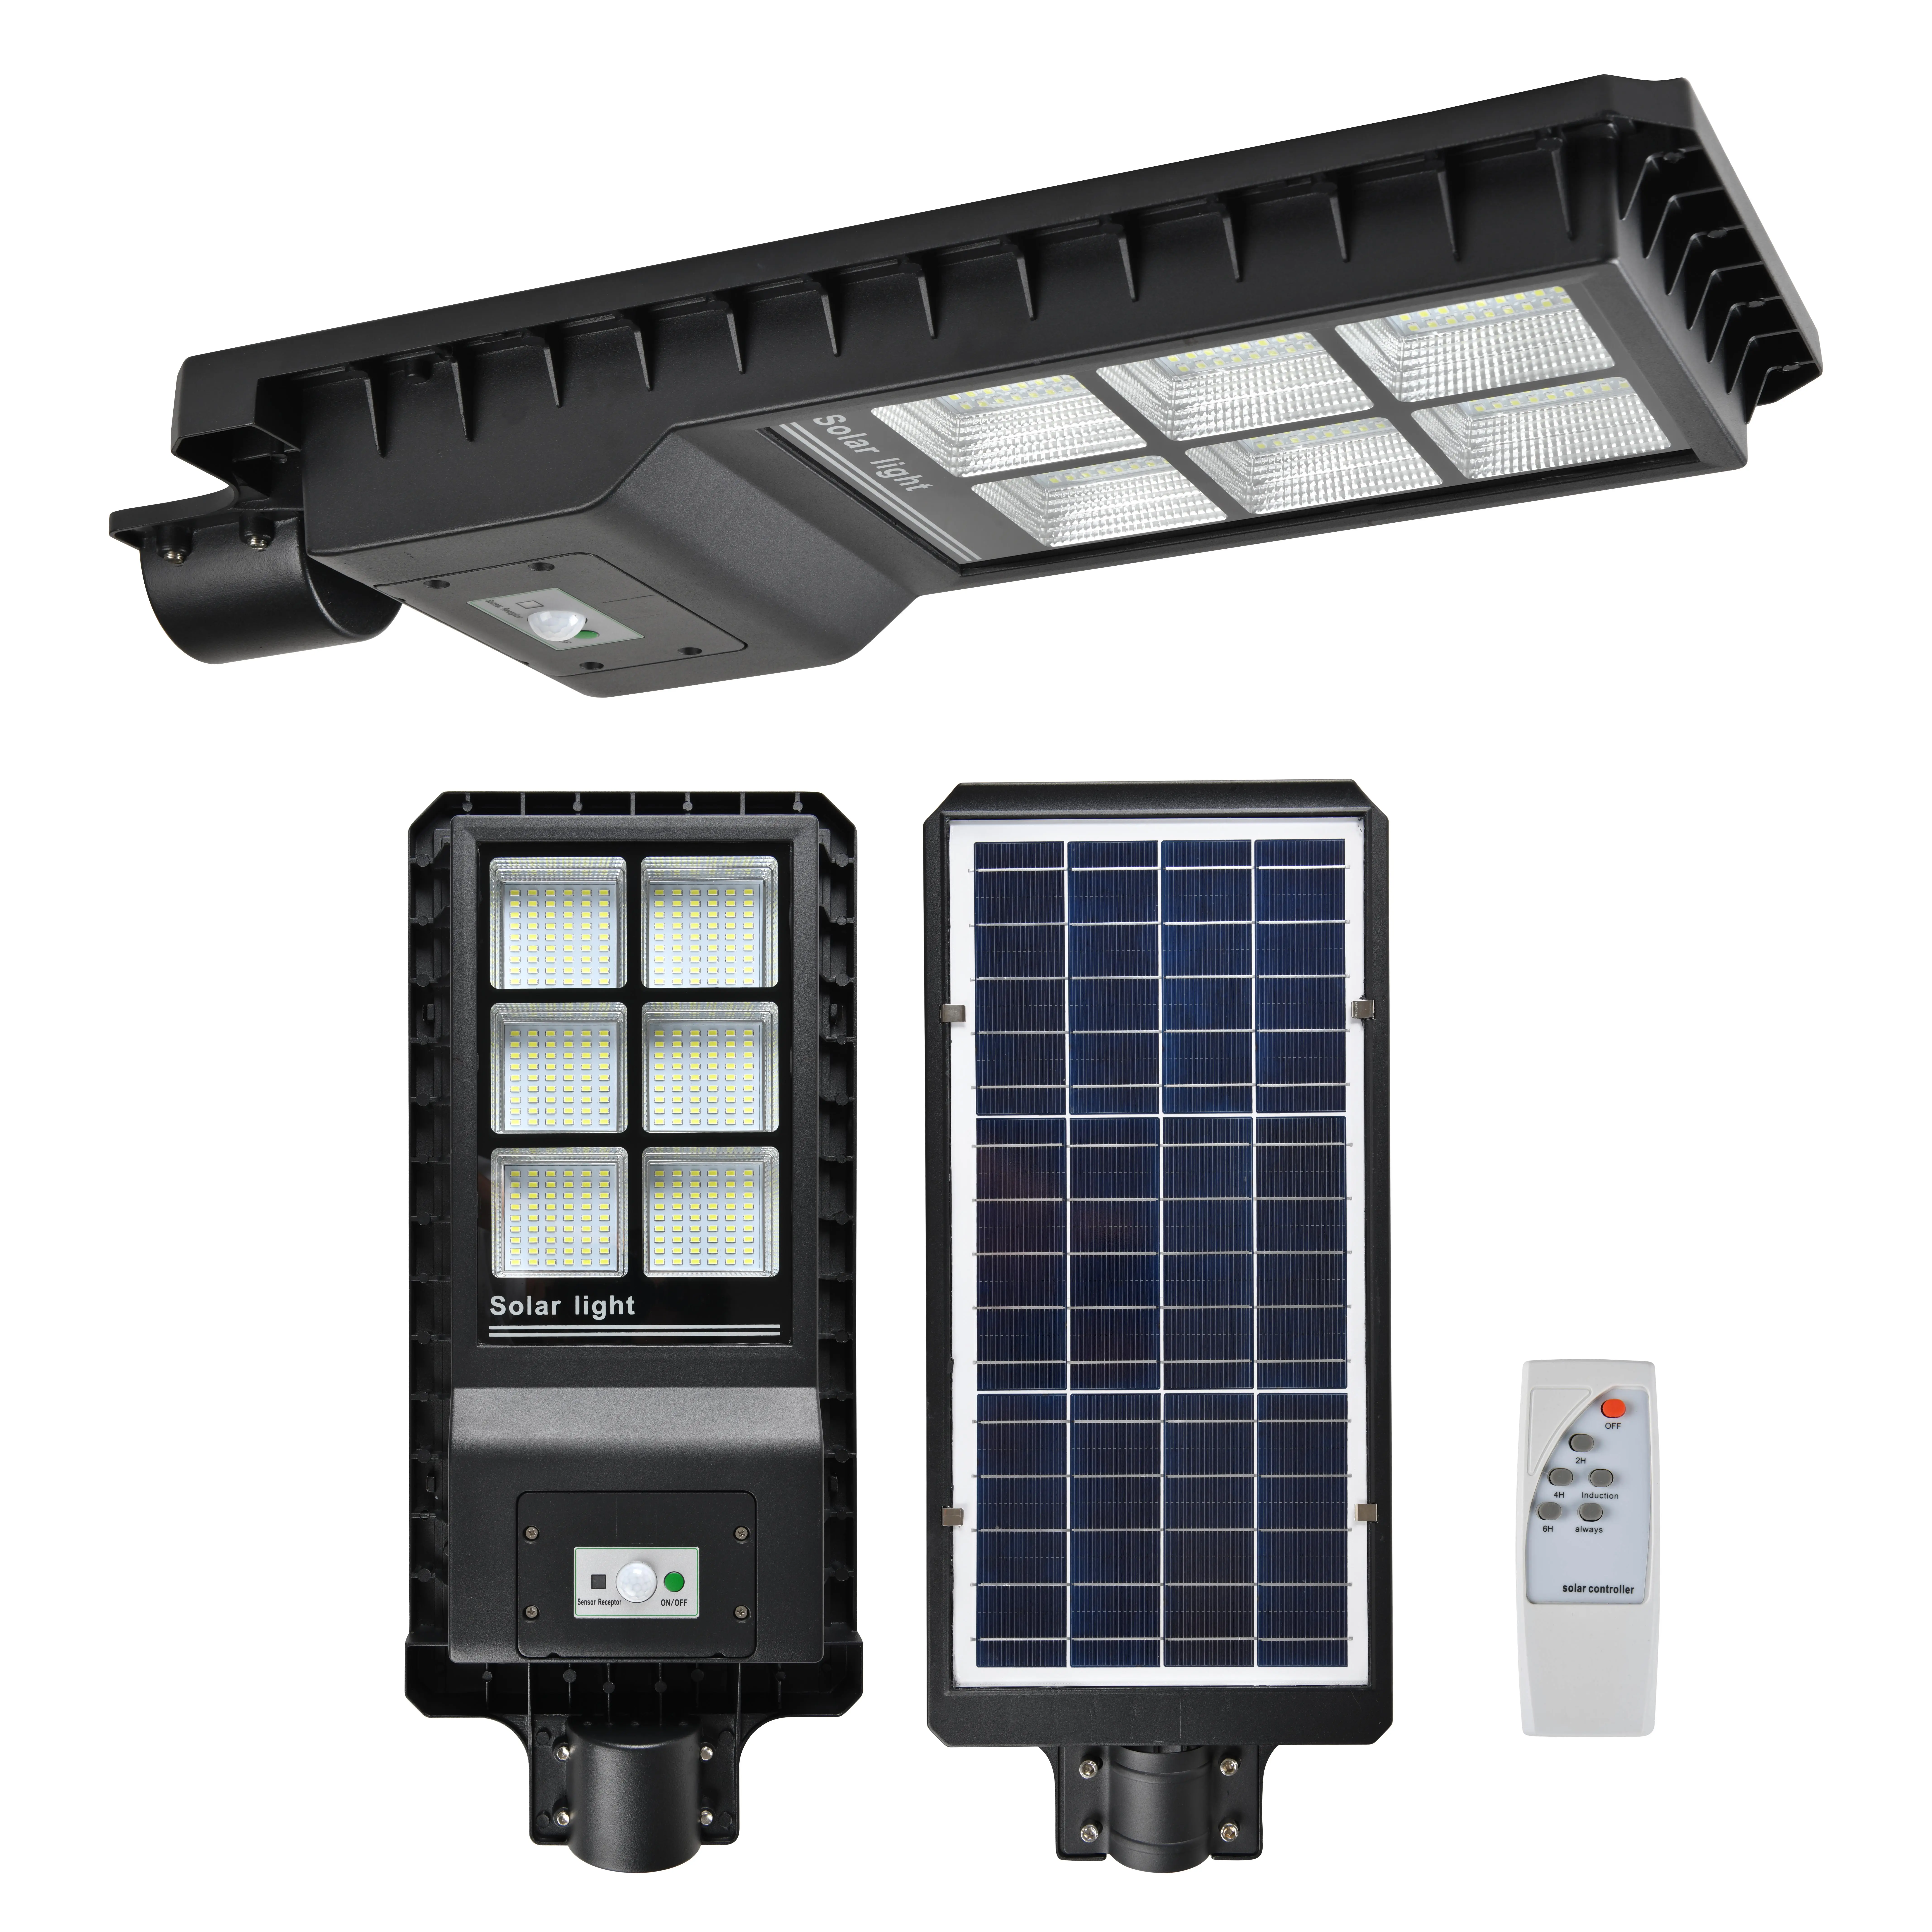 Yüksek kaliteli akıllı güneş sokak lambası üreticisi tedarikçisi IP65 300w hepsi bir güneş led sokak lambası 3 yıl garanti ile